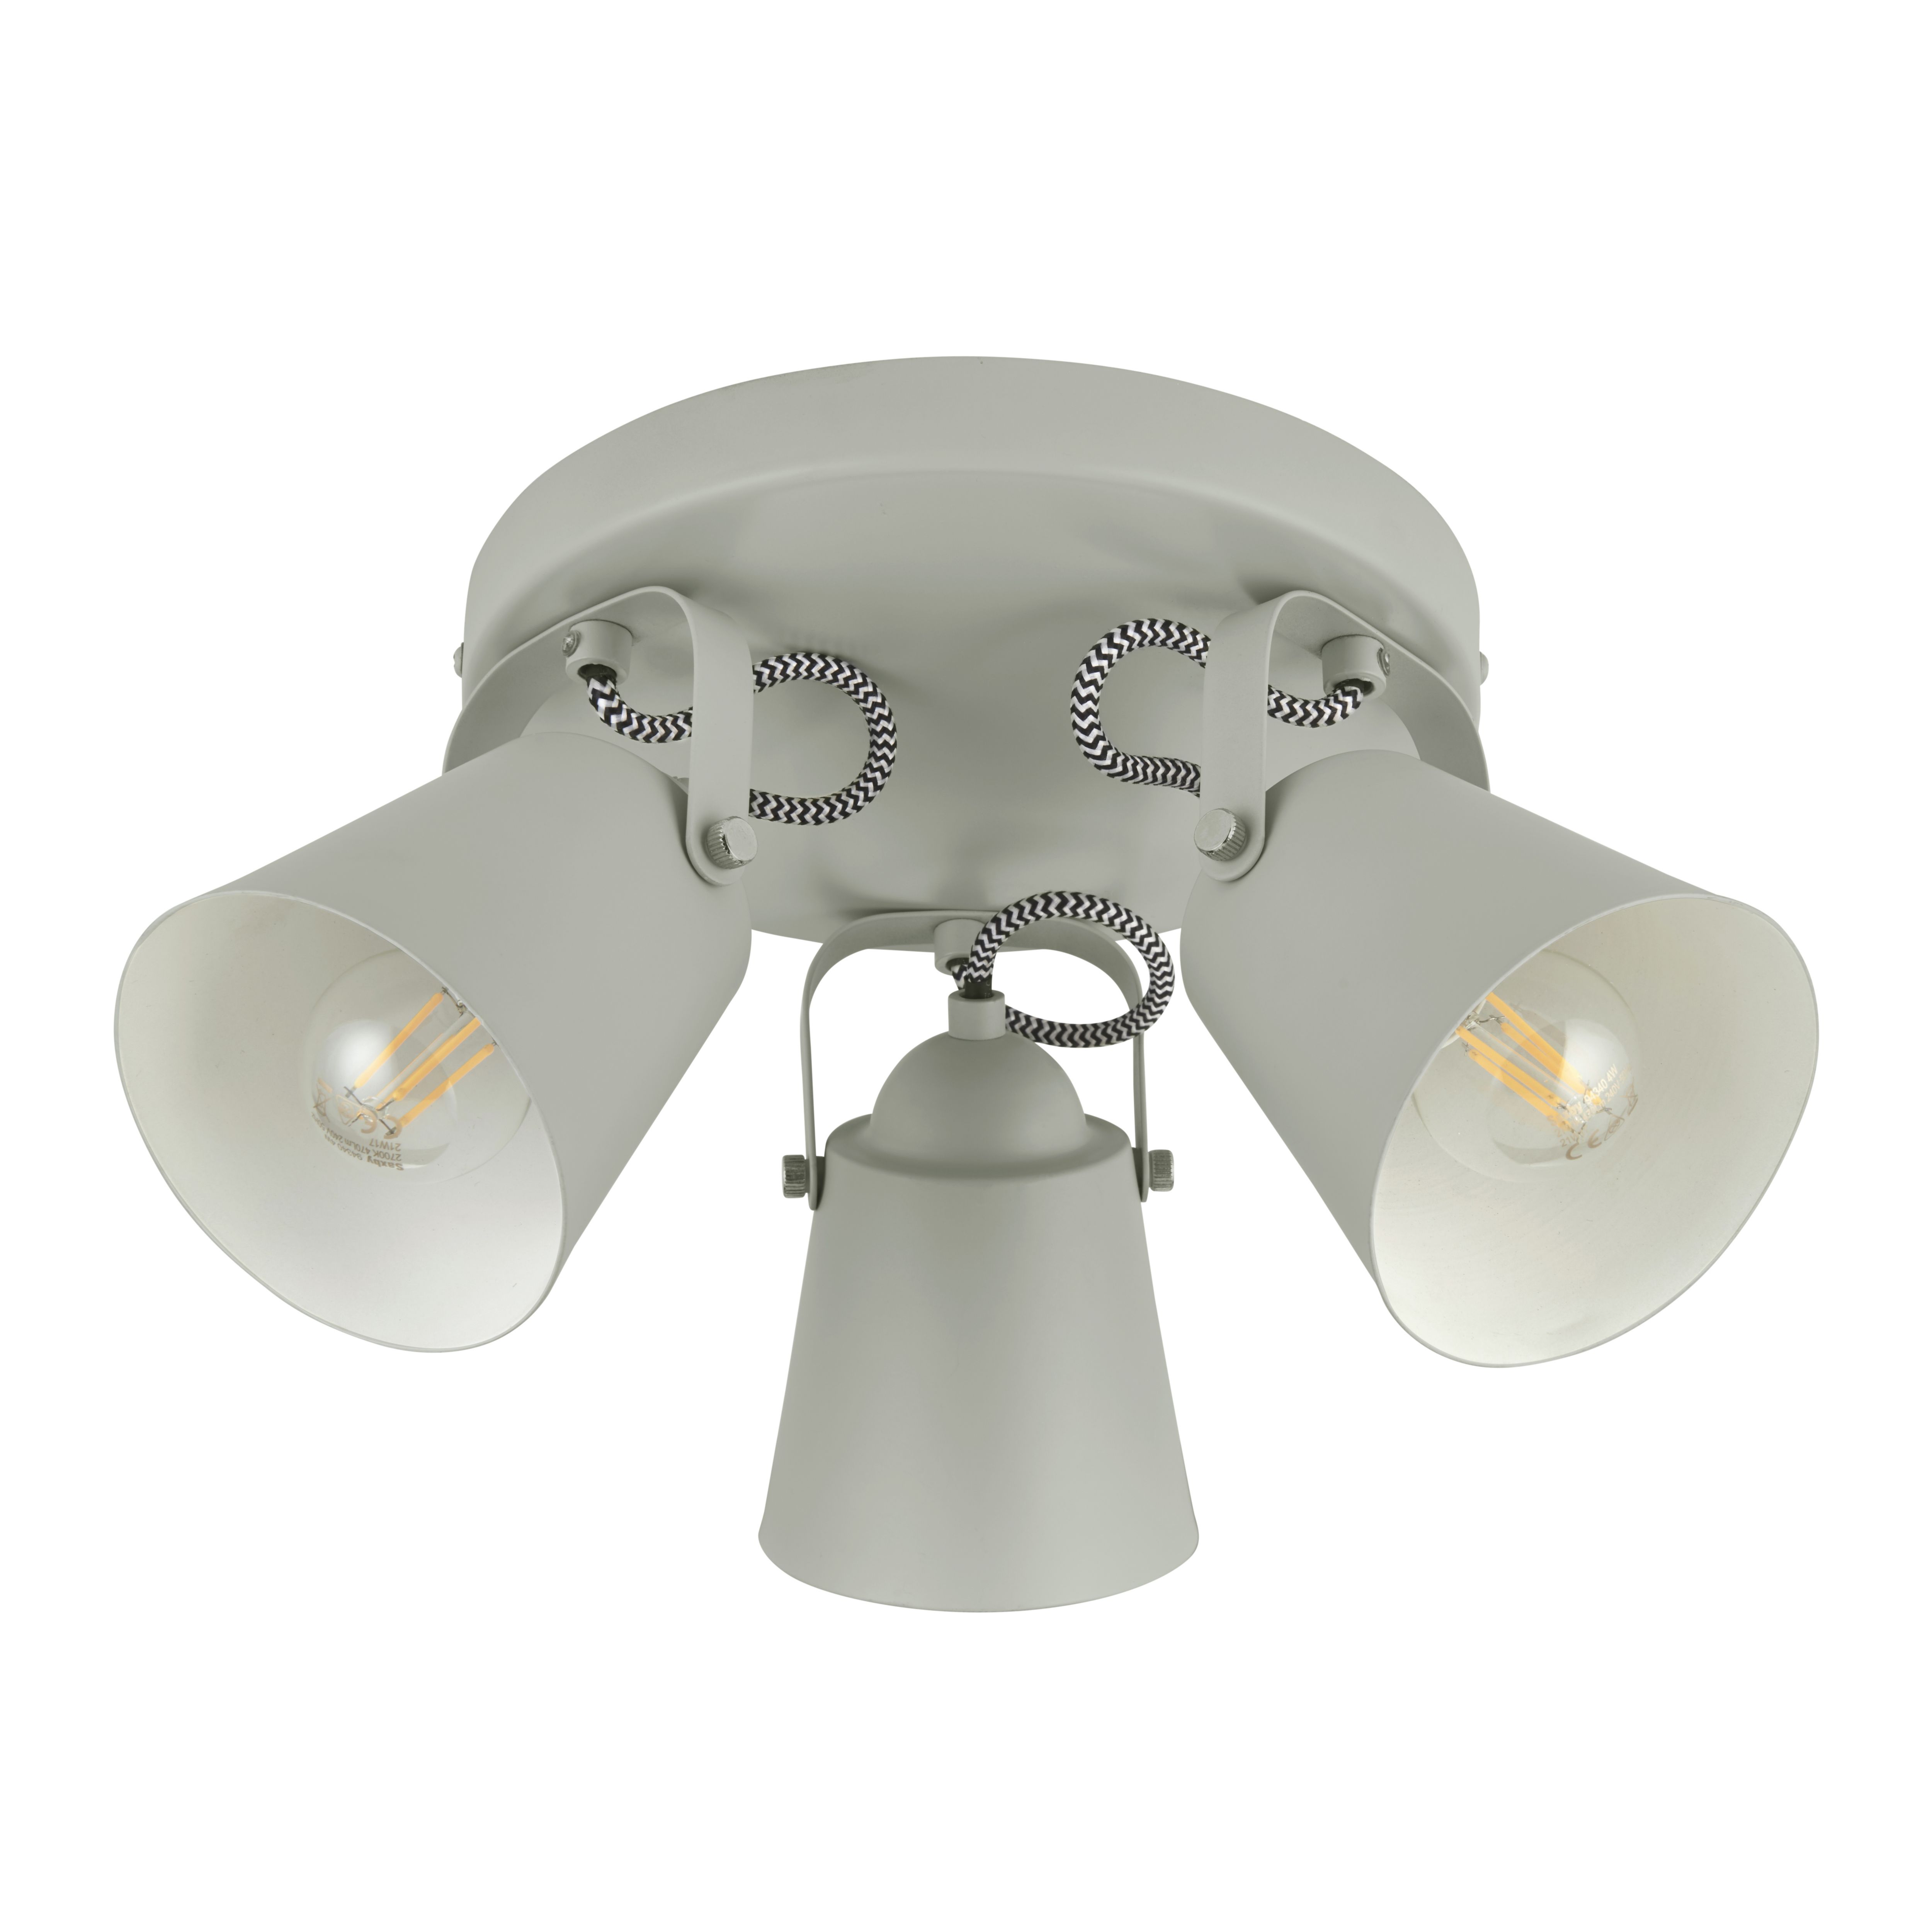 Layton Industrial Grey 3 Light Spotlight